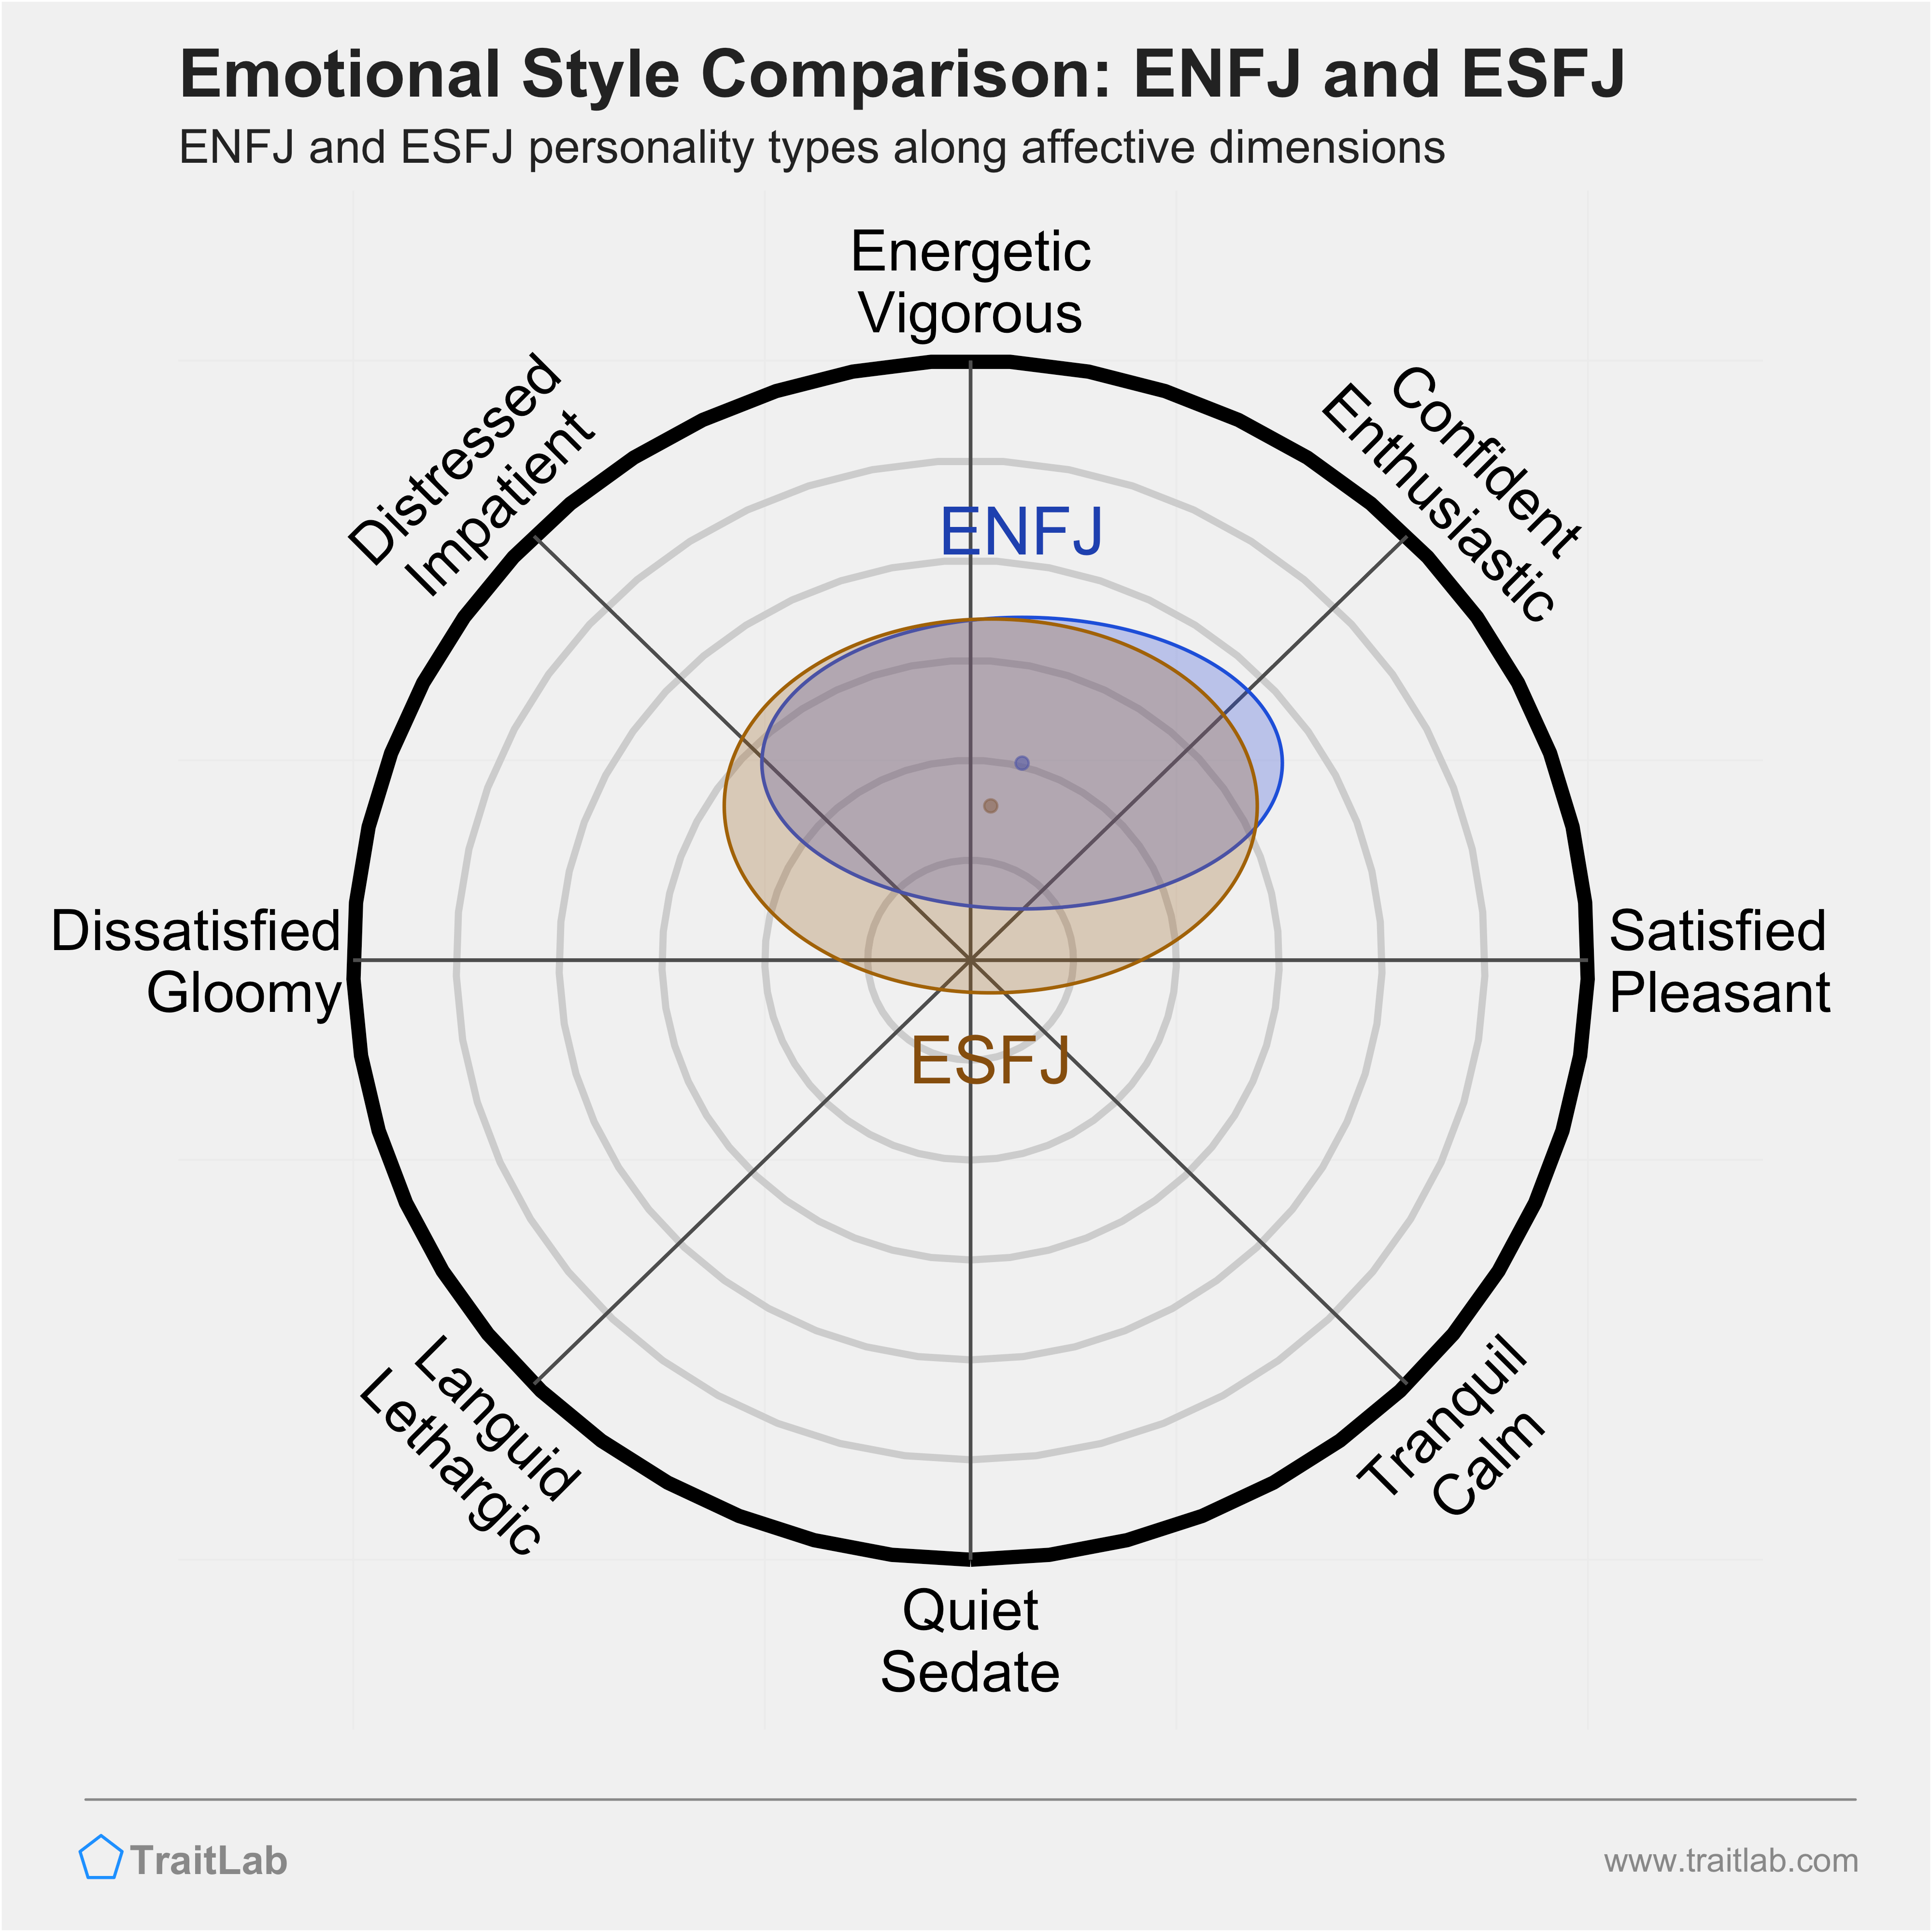 ENFJ and ESFJ comparison across emotional (affective) dimensions